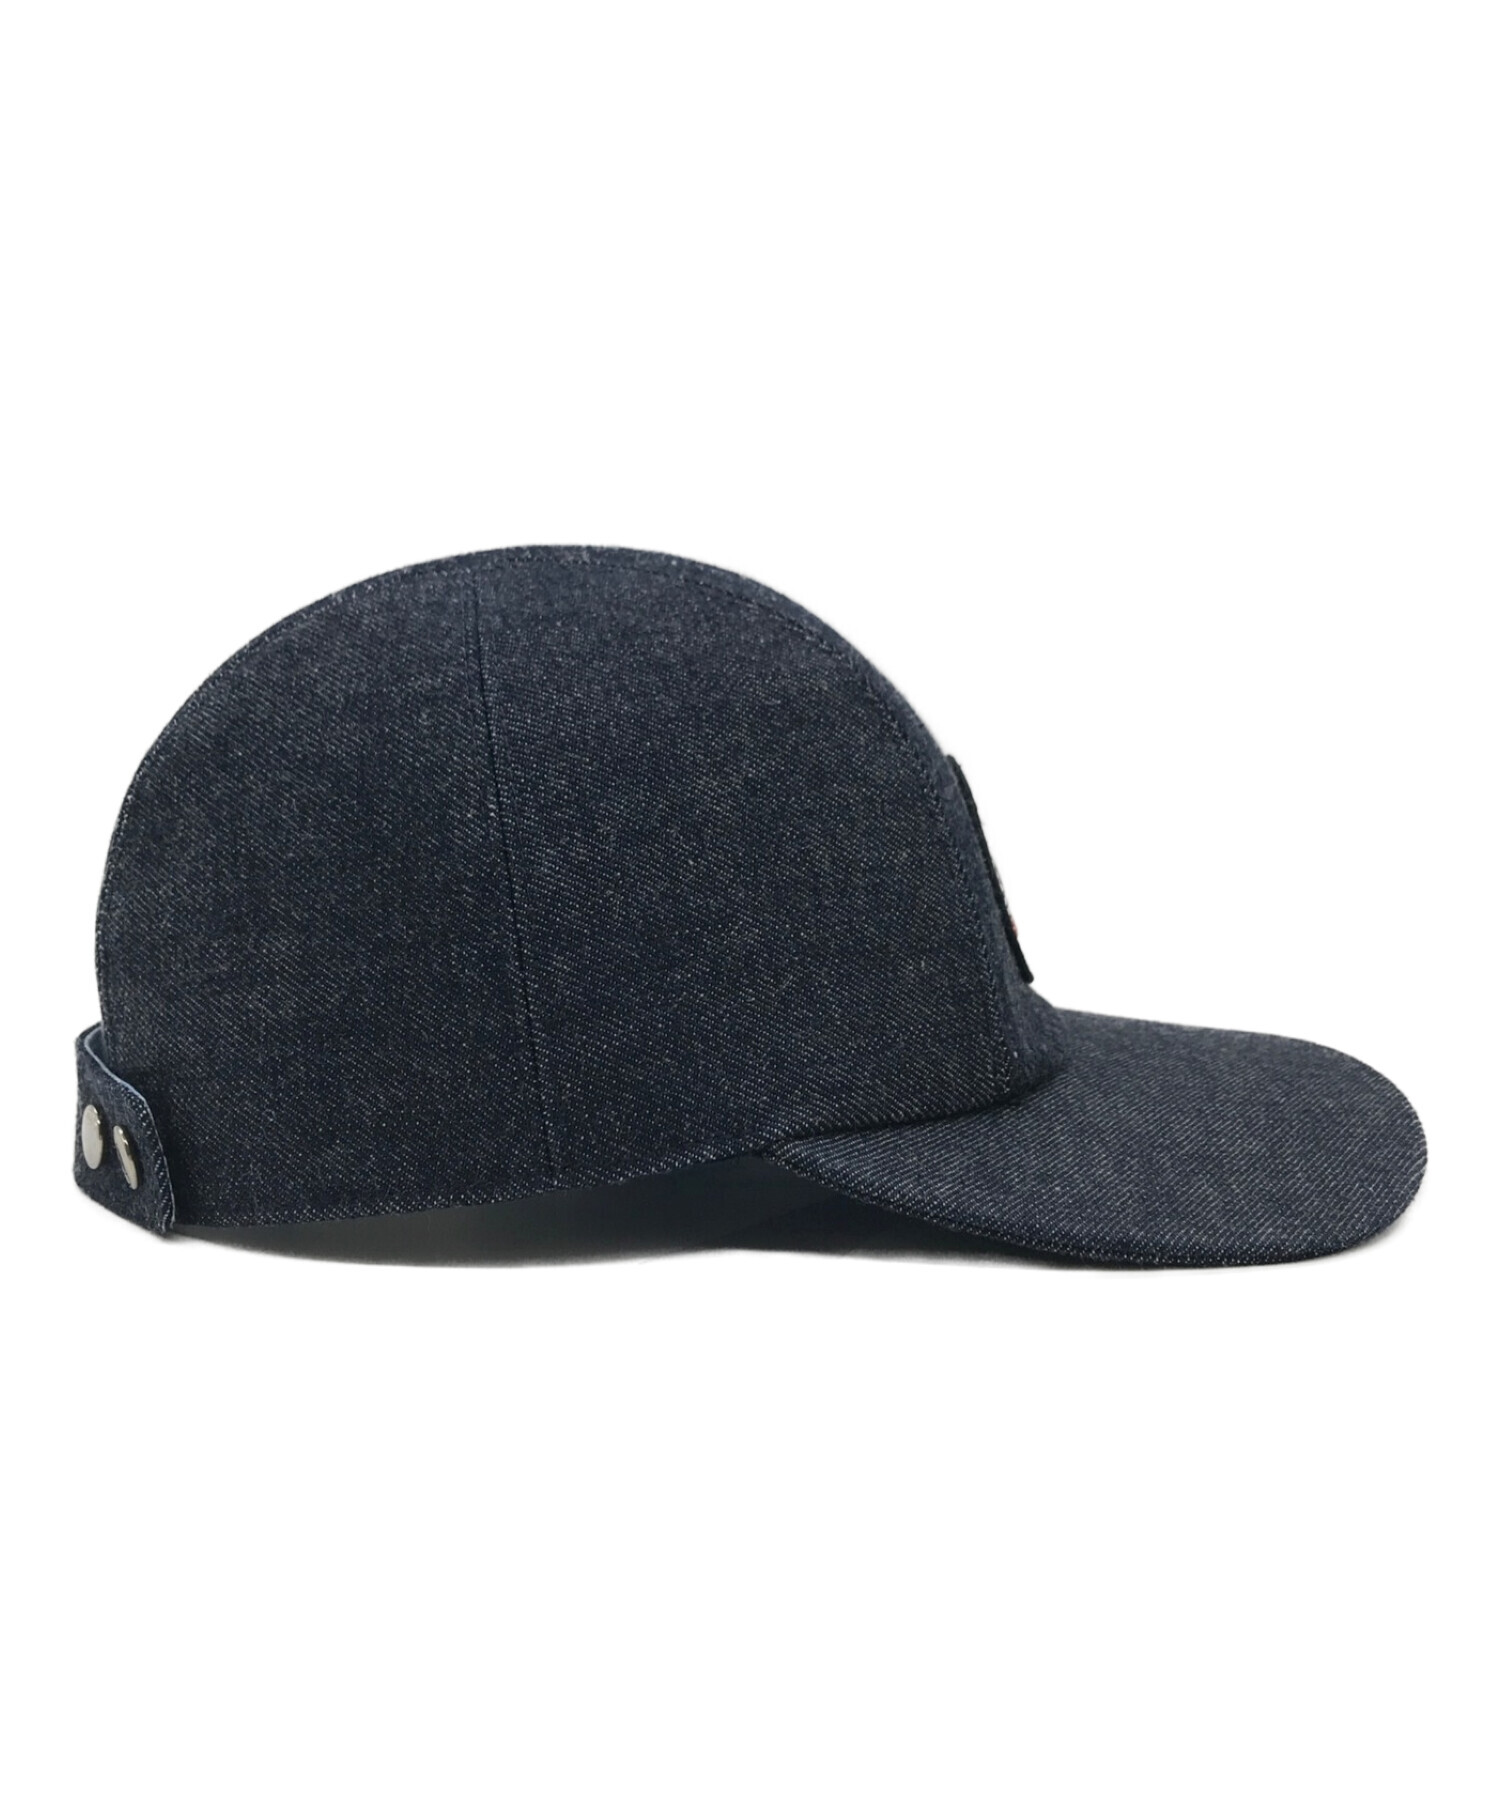 エルメス デニムキャップ サイズ59〜60 - 帽子